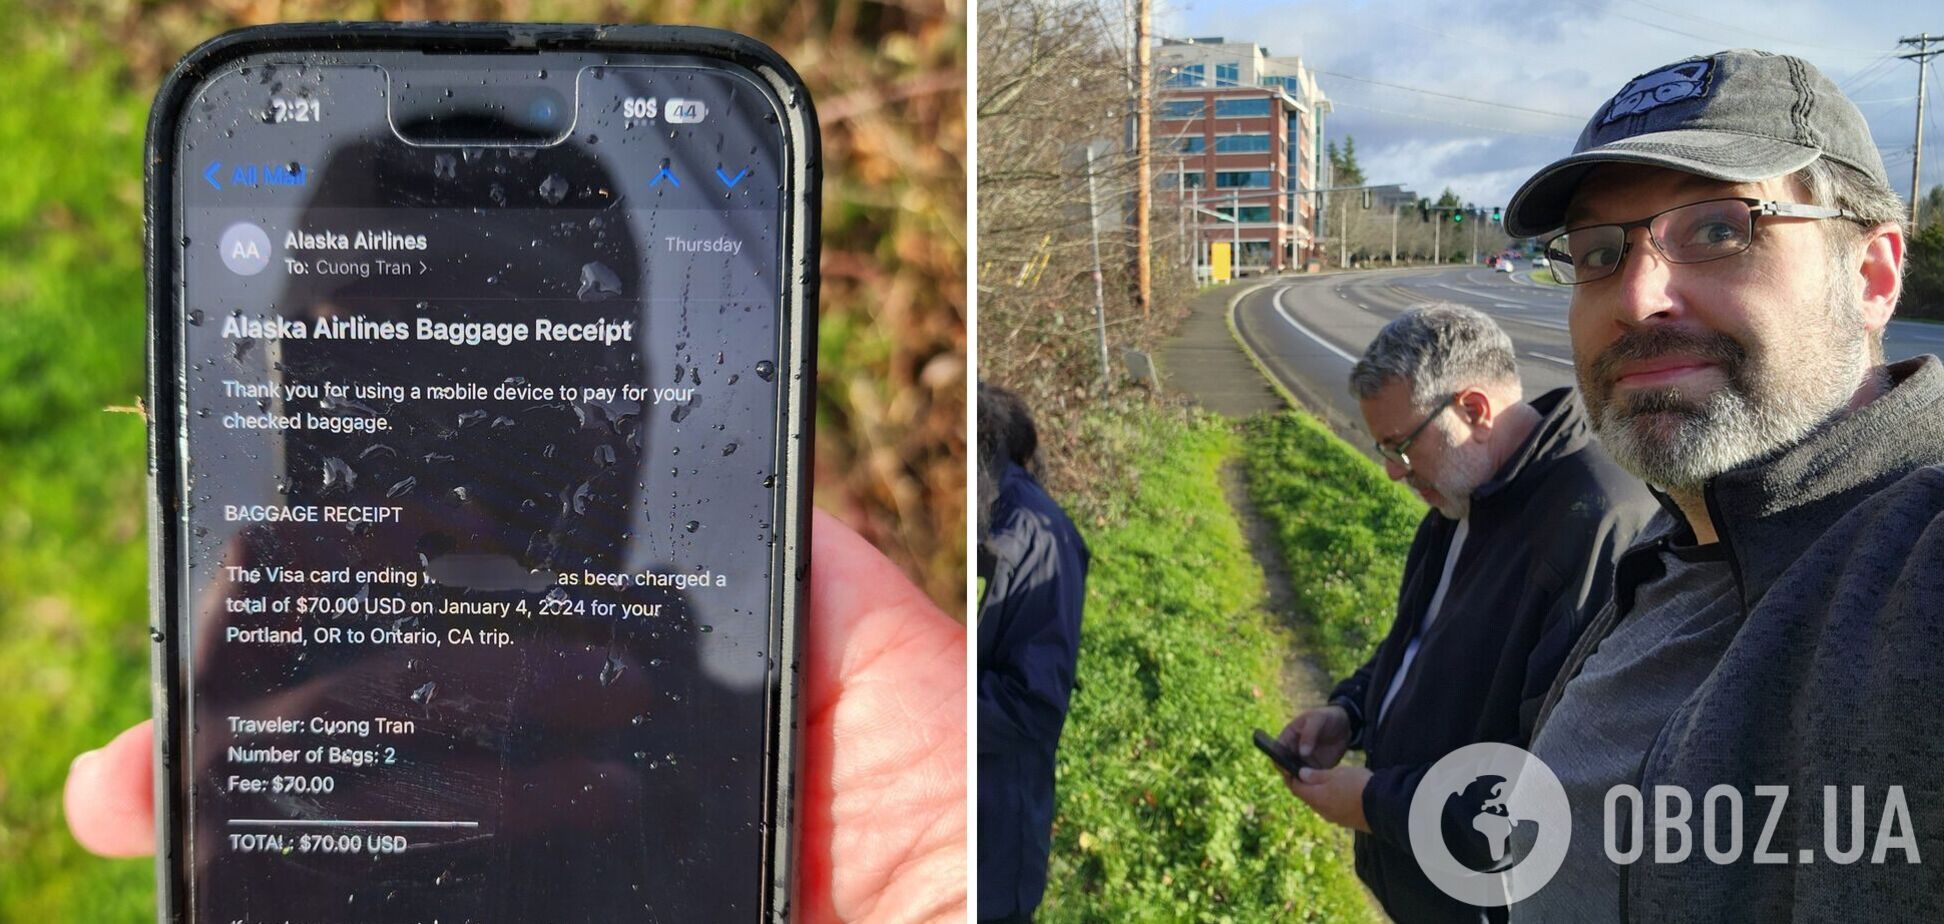 Ни одной царапины на экране! iPhone выпал из самолета с высоты в 5 км и остался целым: история взбудоражила интернет. Фото